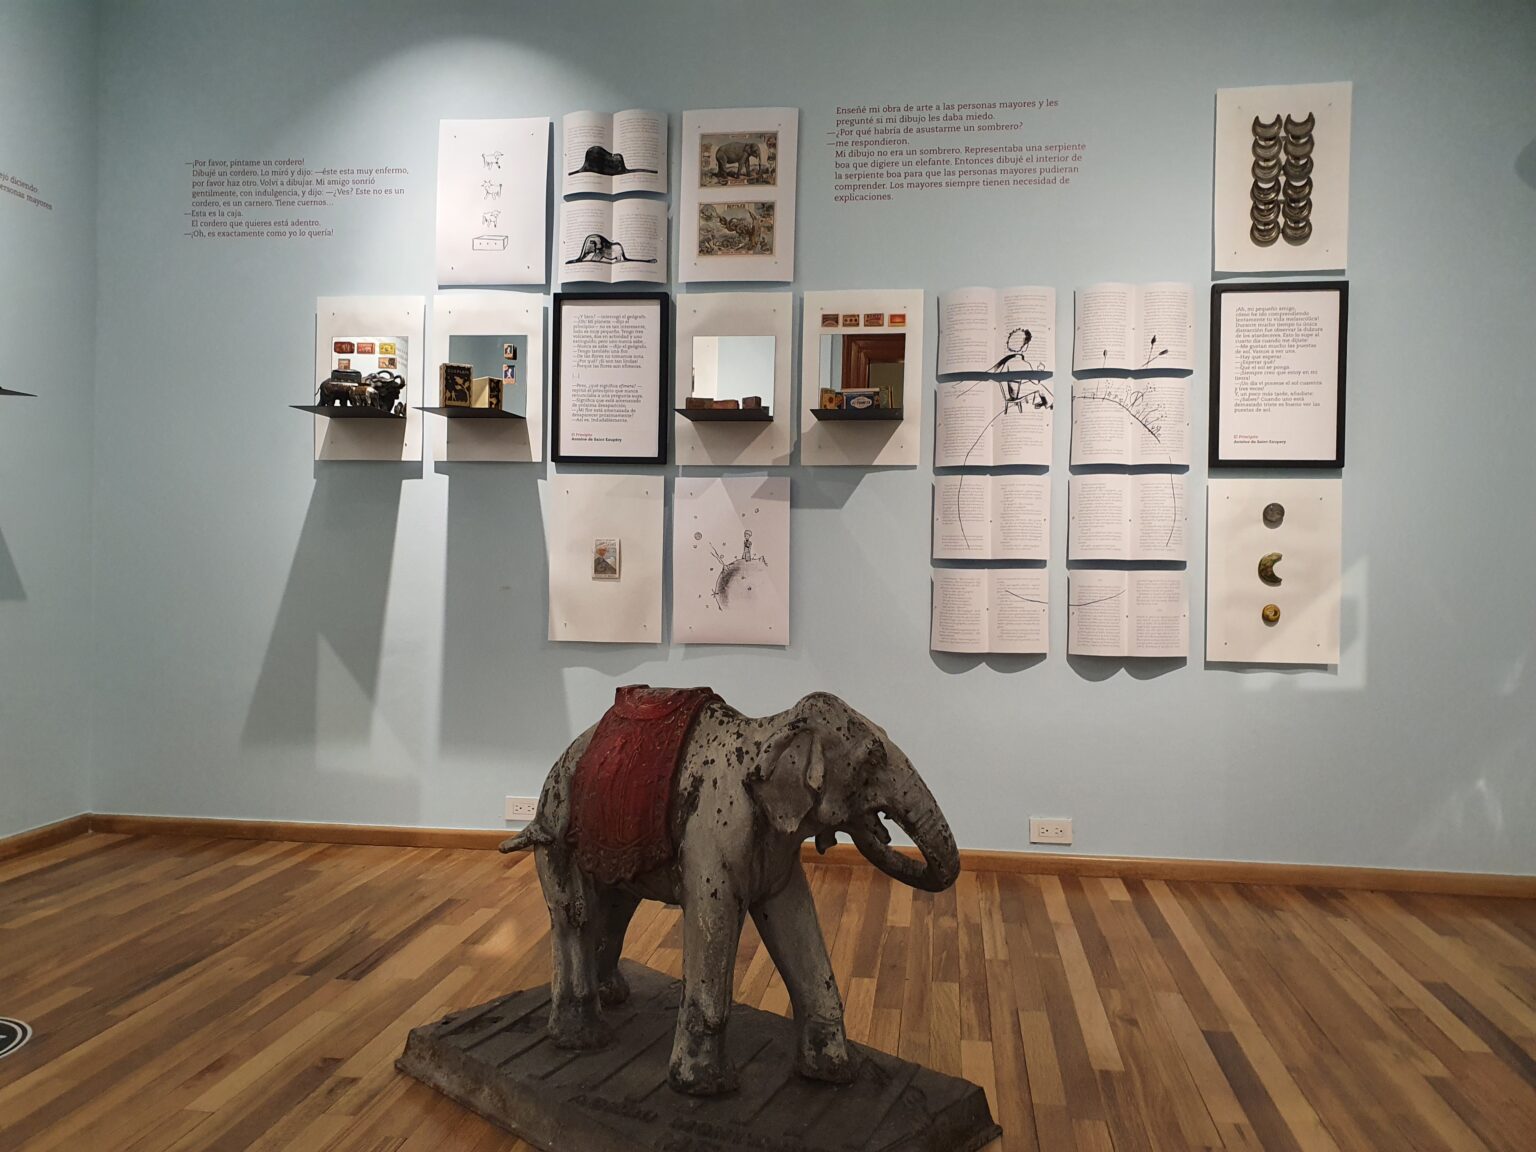 Sala Principito con cuadros en las paredes y una escultura de un elefante perteneciente a la obra 